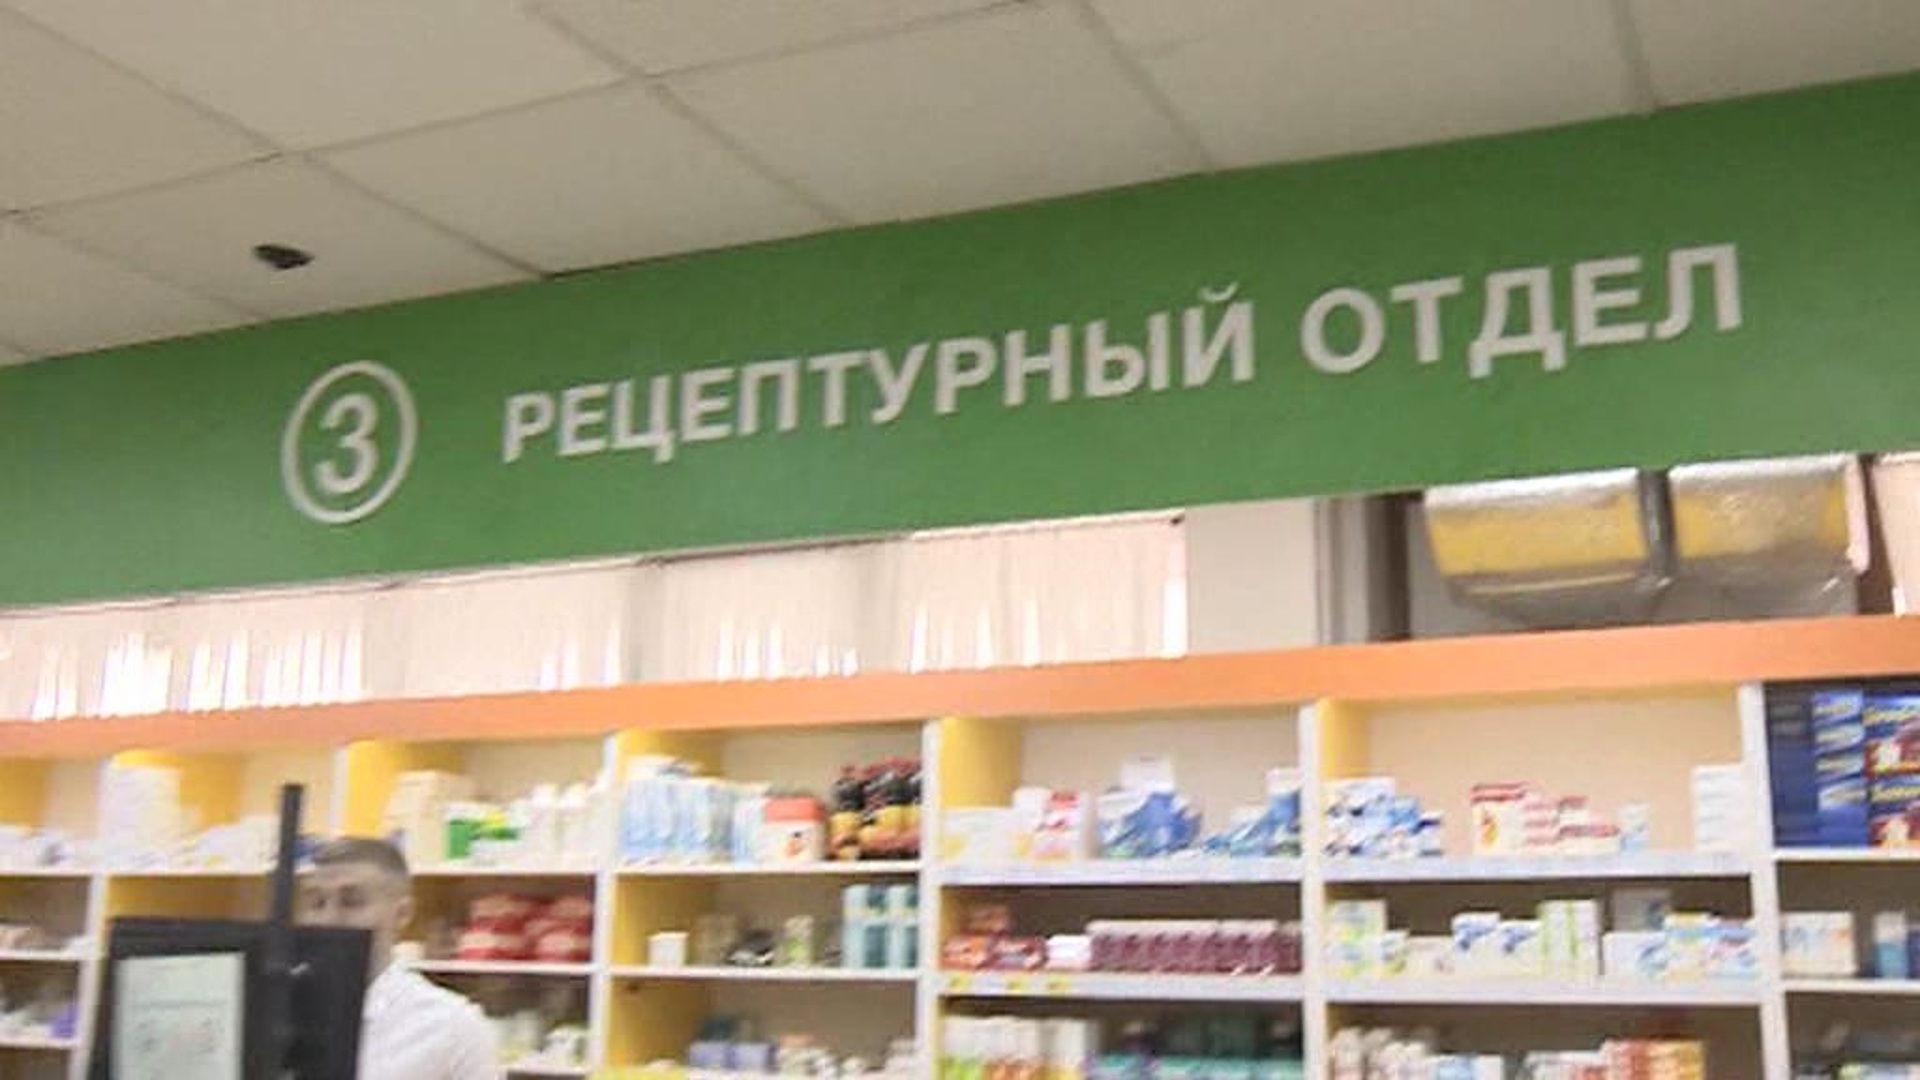 Сайт лекарств в аптеках воронеж. Бесплатные лекарства. Аптека мир лекарств Москва. Лекарства в аптеках Екатеринбурга. Баннер для аптеки с лекарствами.